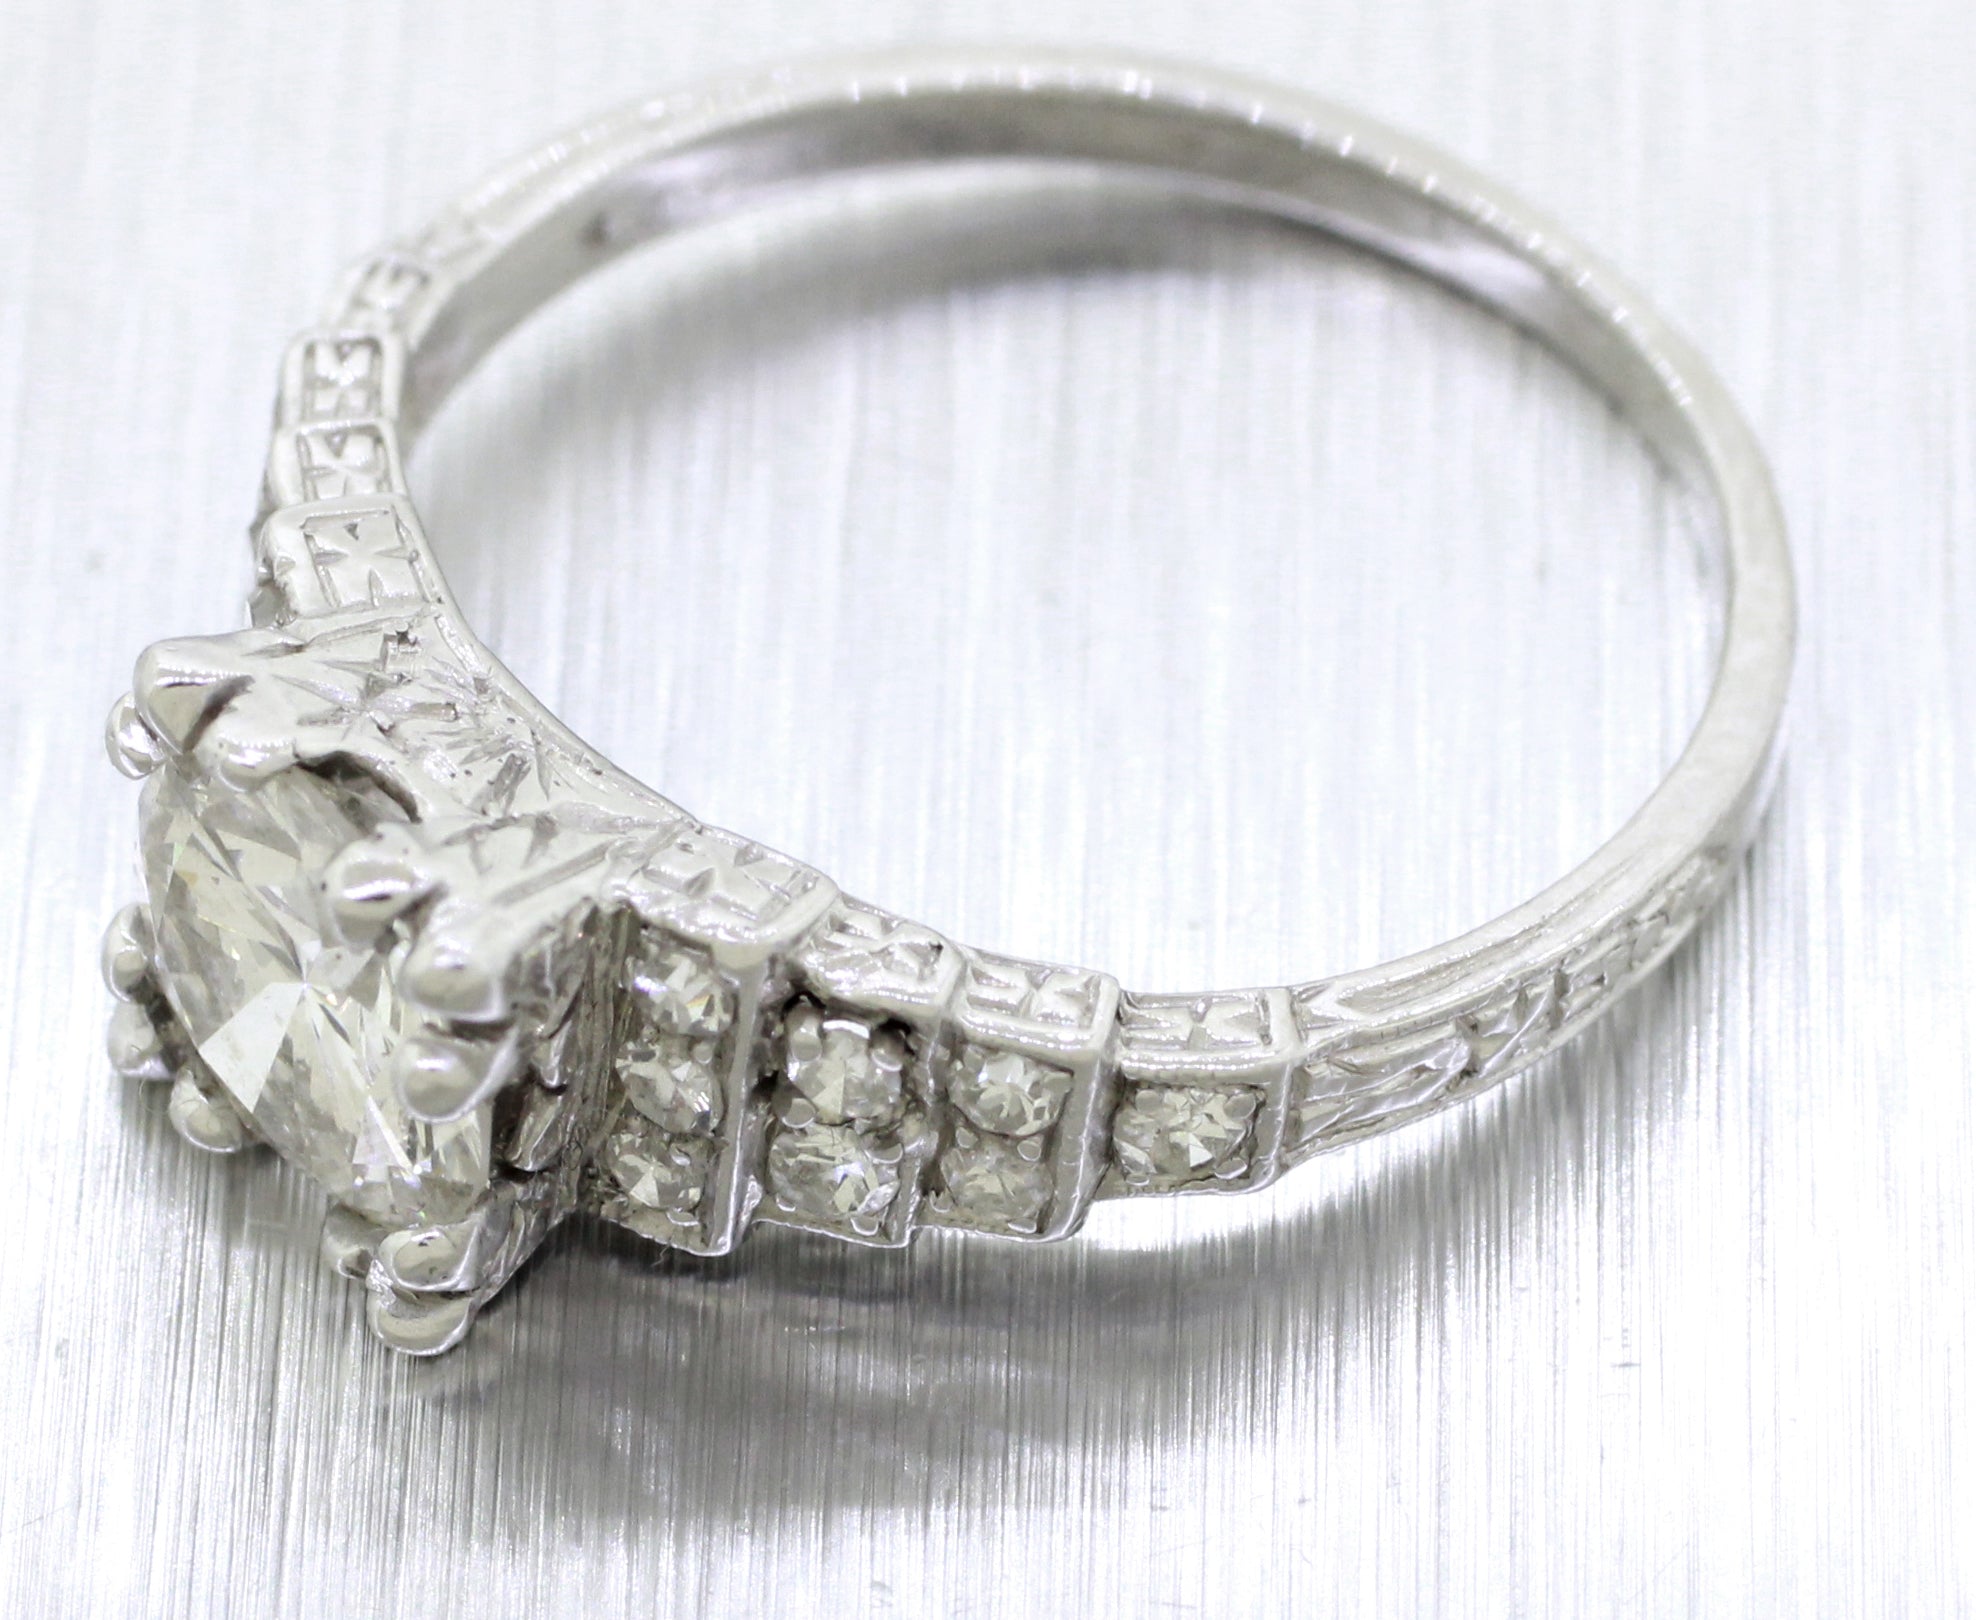 EGL Antique Art Deco H / VS2 / 1.35ctw Diamond Engagement Ring - Platinum